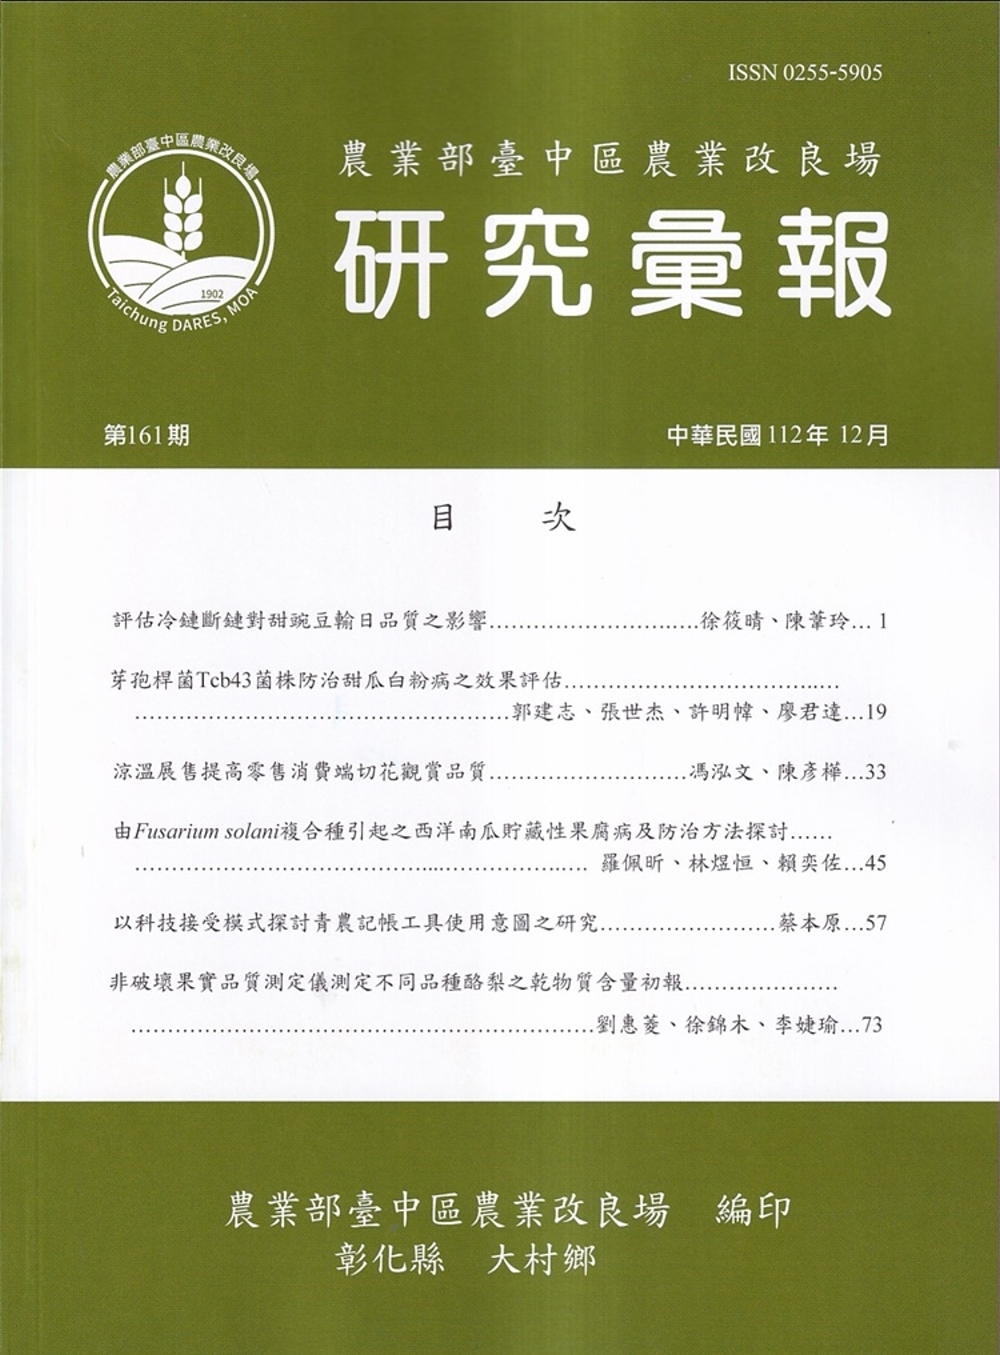 研究彙報161期(112/12)行政院農業委員會臺中區農業改良場